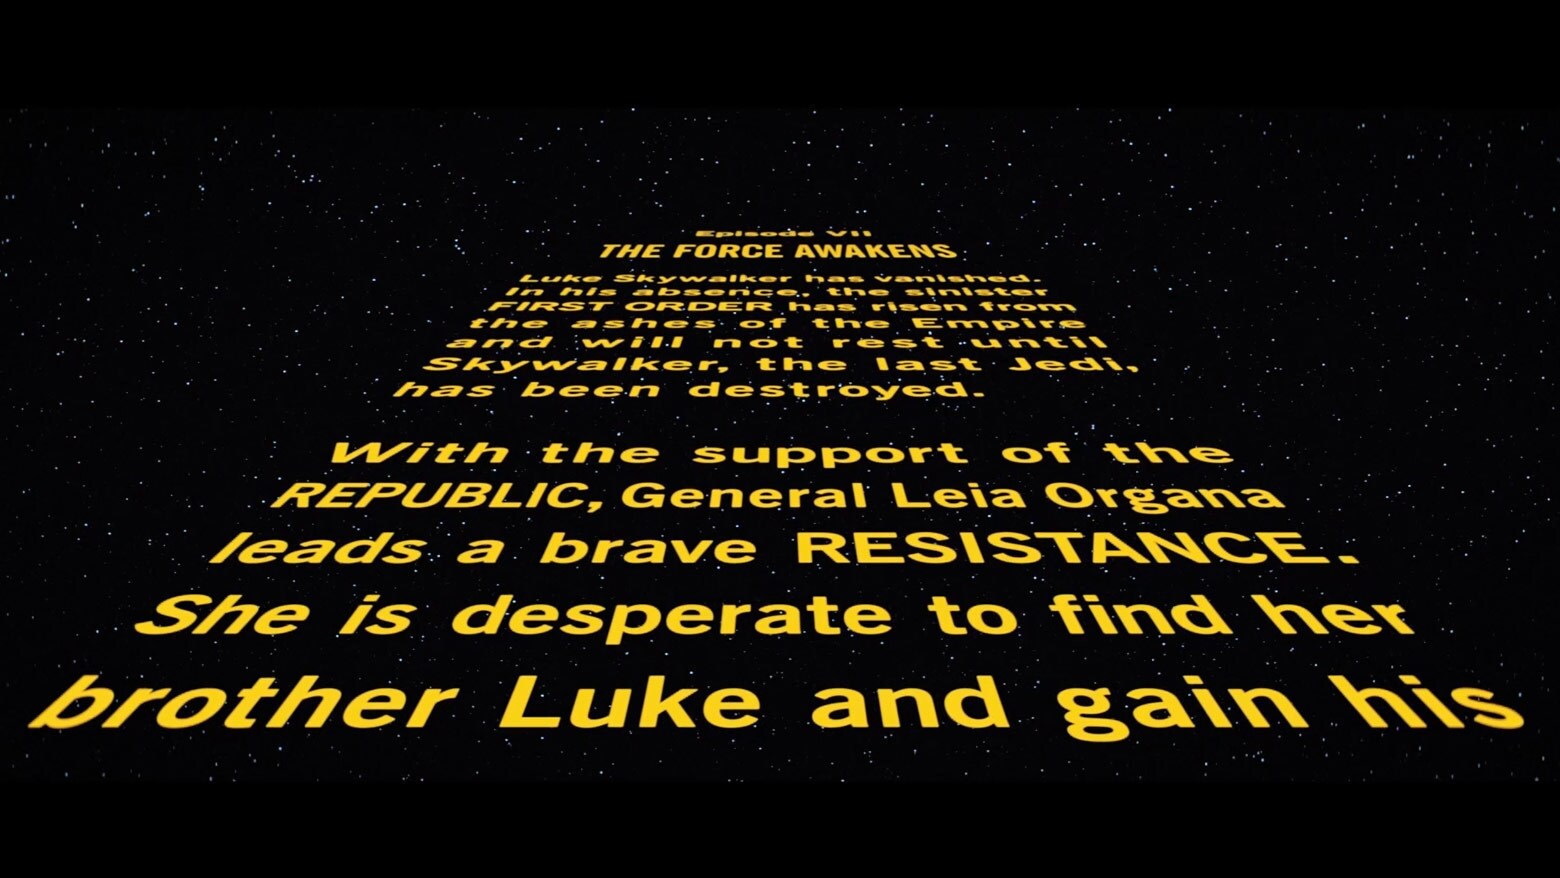 Star Wars: Episode VII The Force Awakens Opening Crawl